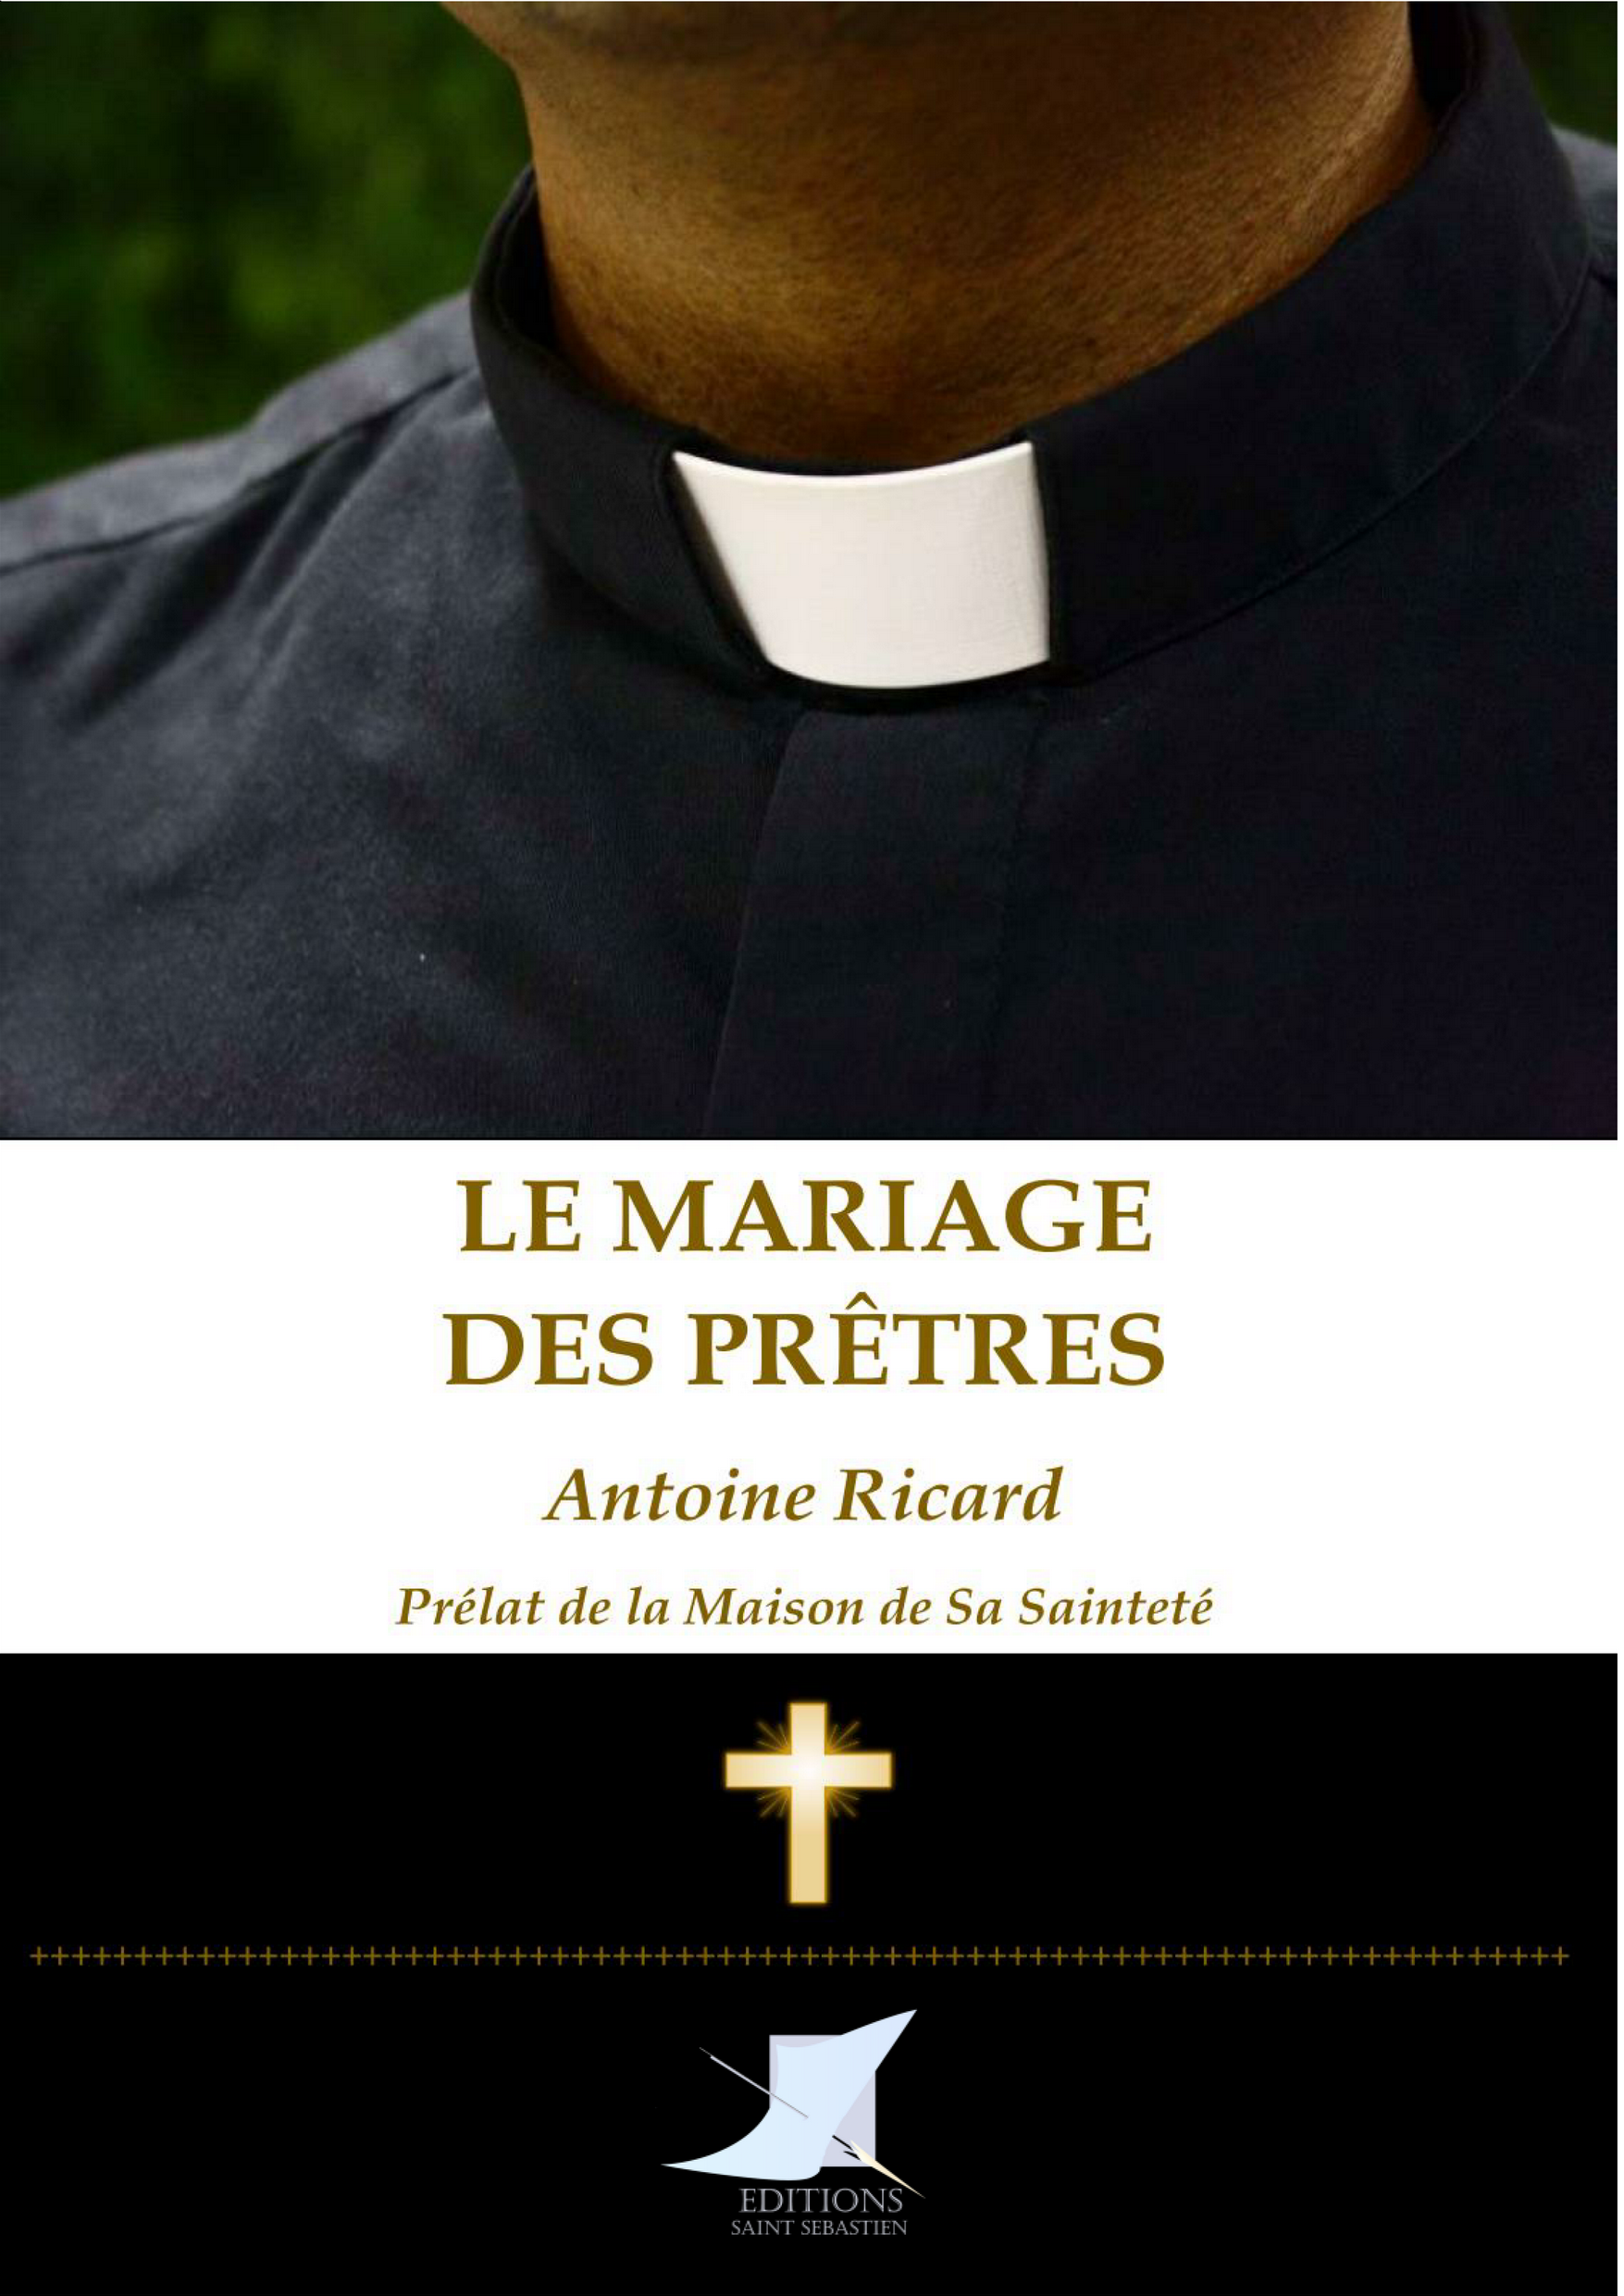 Le mariage des prêtres